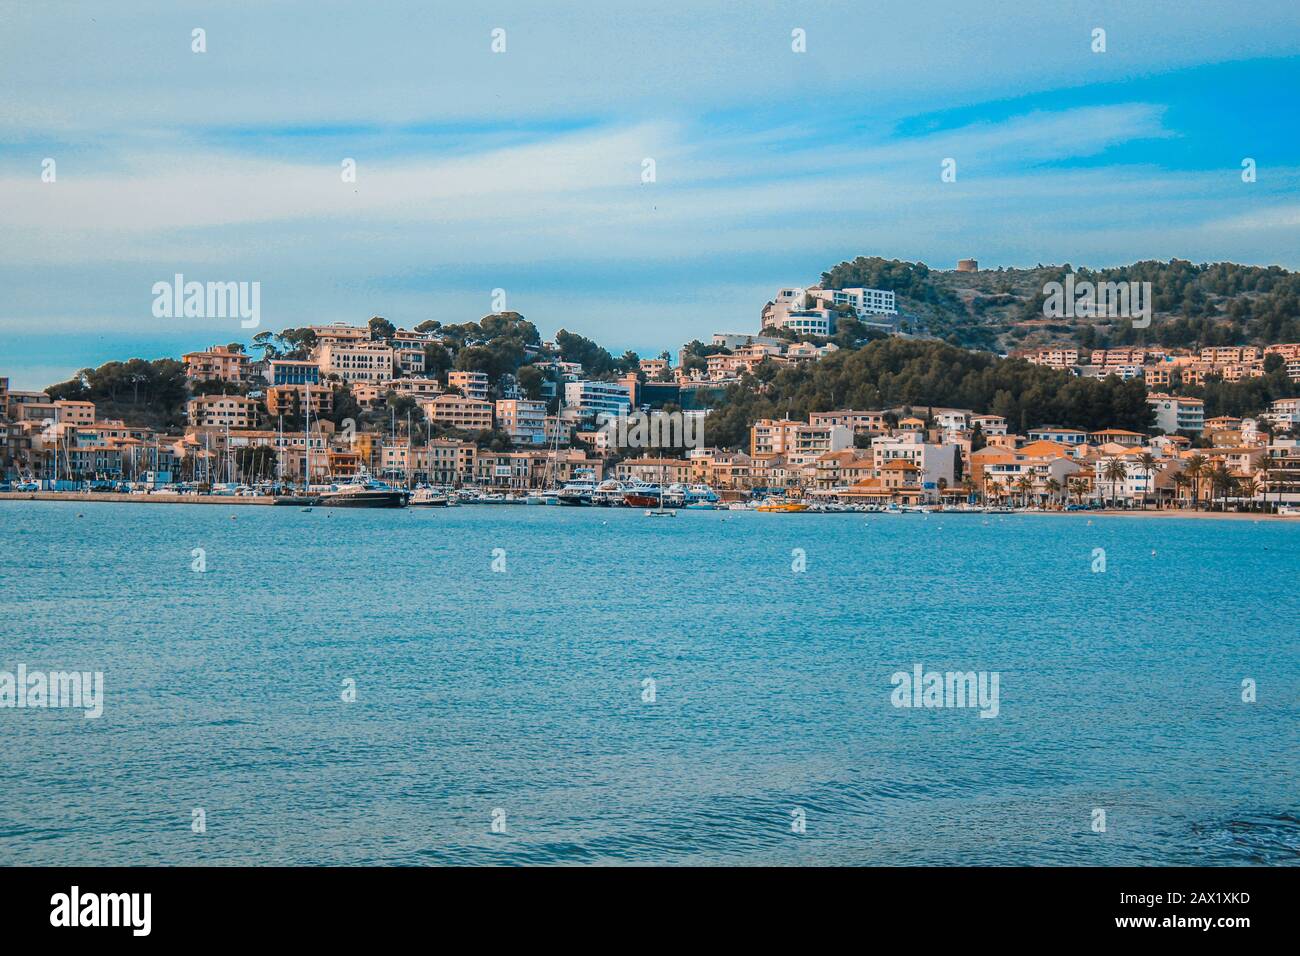 View of scenic Port De Soller in Mallorca, Spain Stock Photo